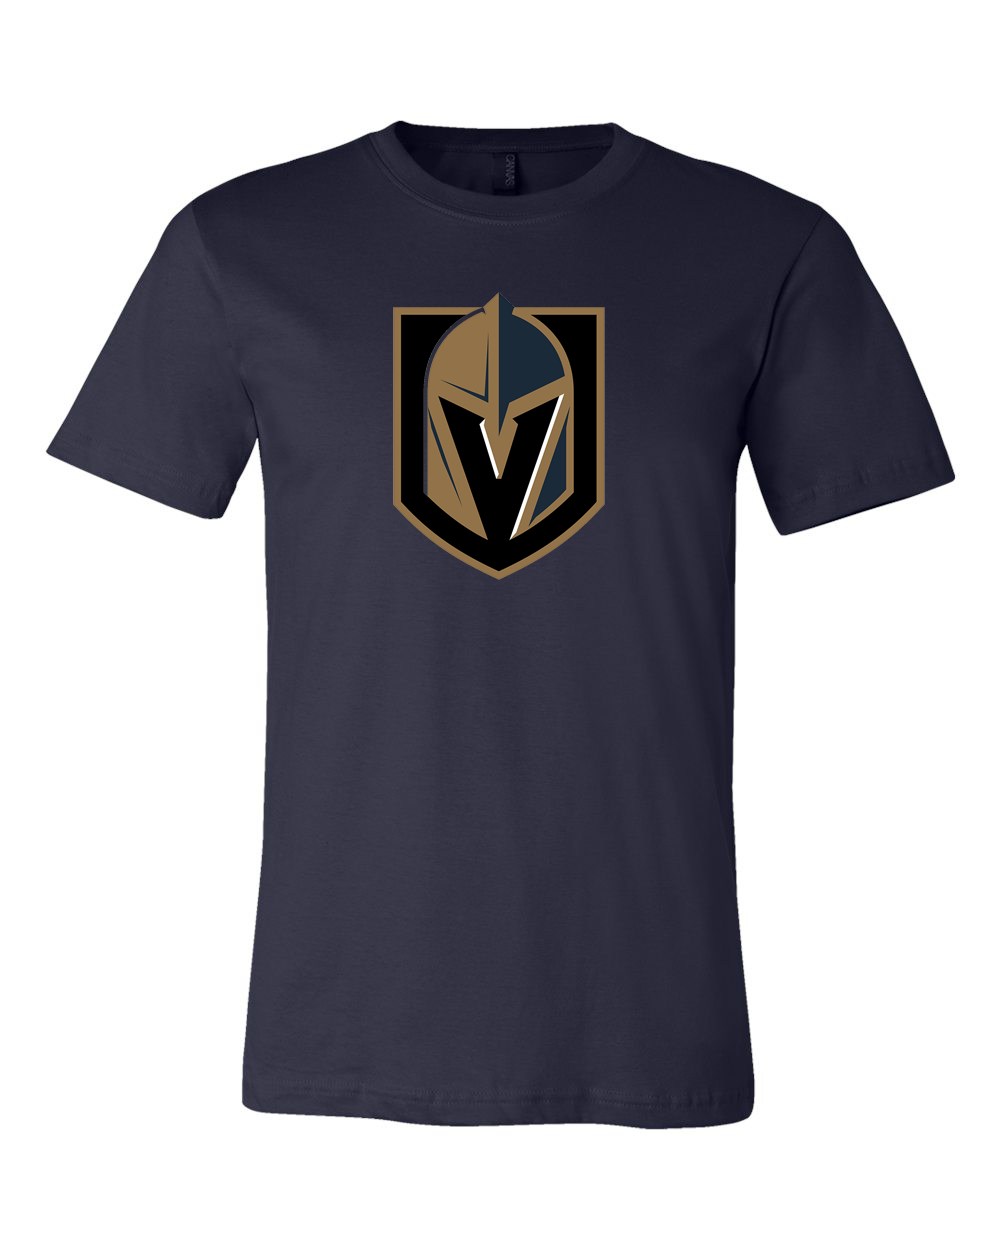 Las Vegas Golden Knights logo Team Shirt jersey shirt